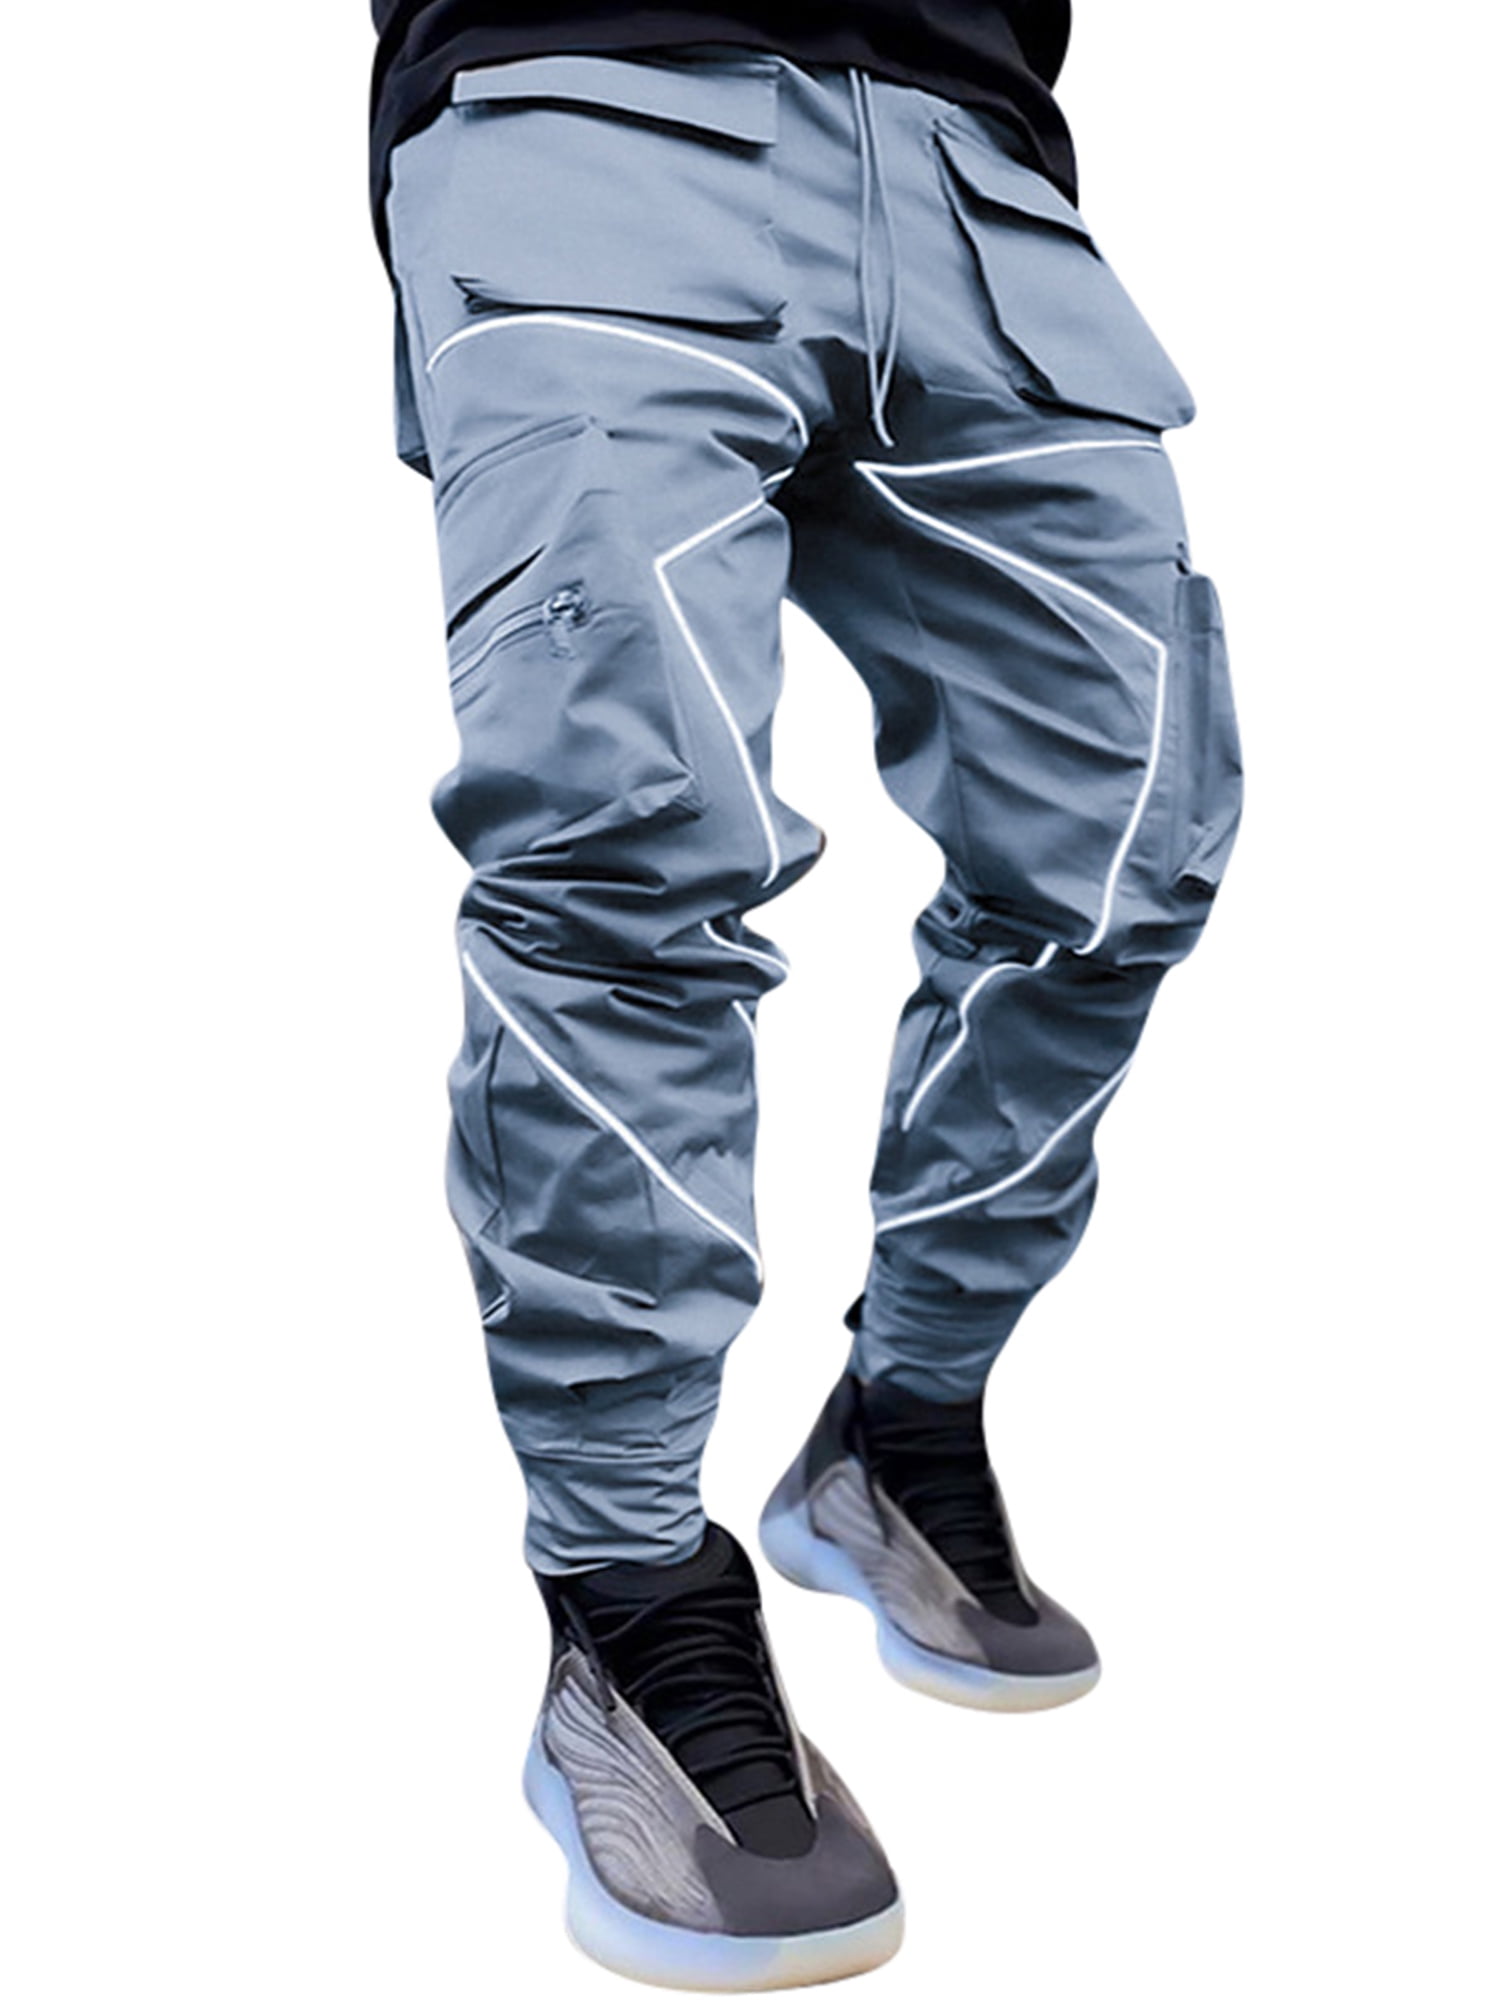 Men's Fashion Cargo Pants Outdoor Multi-pocket Straight Hip Hop Trousers Plain D